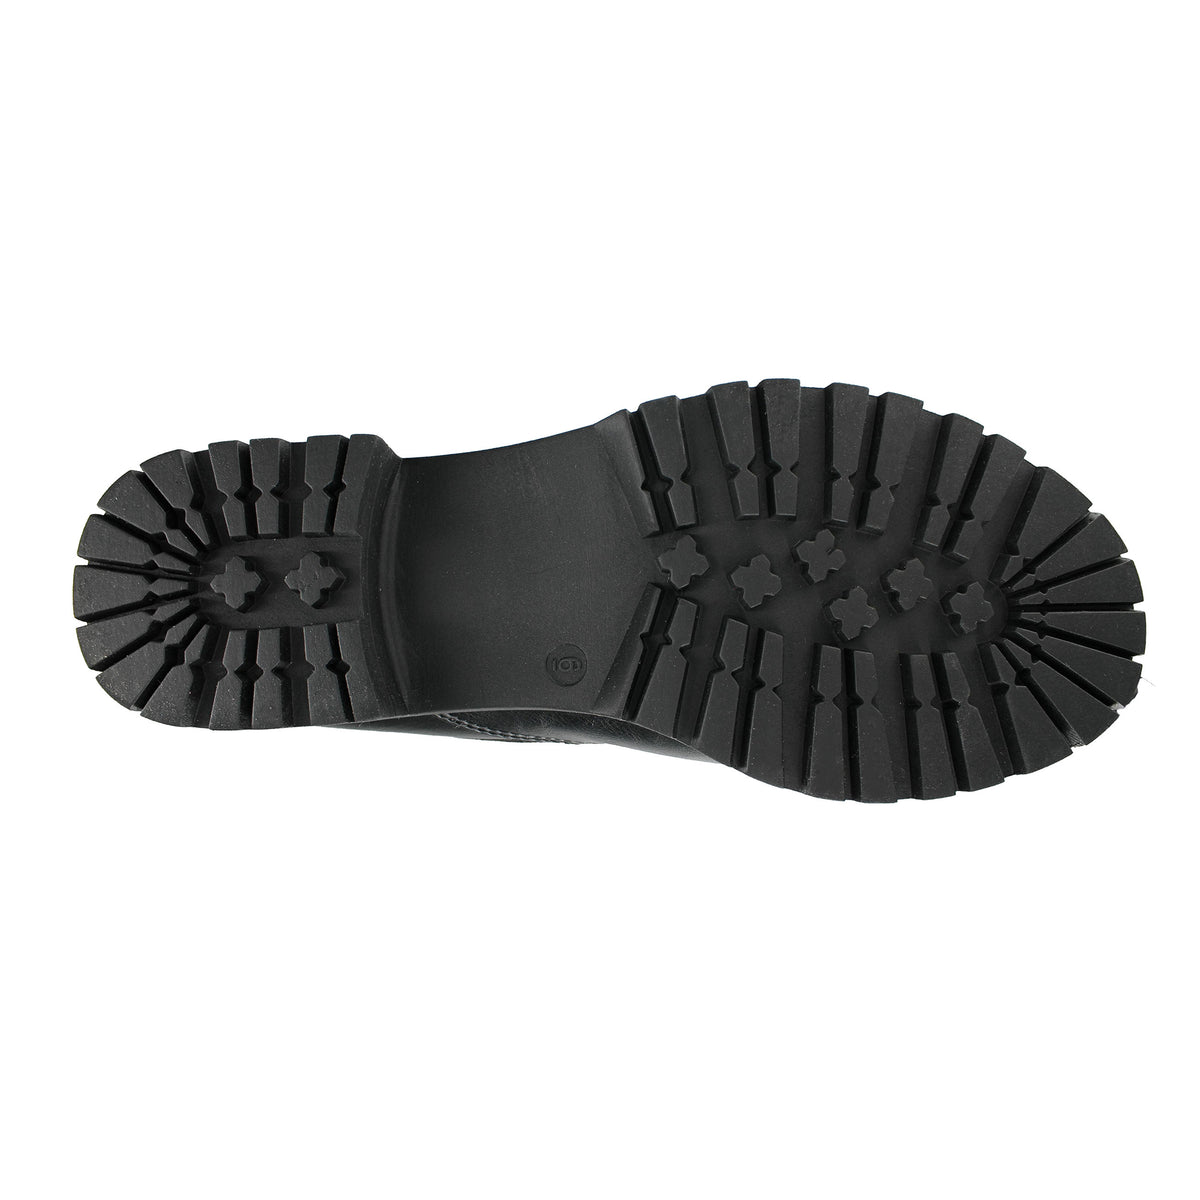 Aquatherm Canada Poppy2 Black Shoes